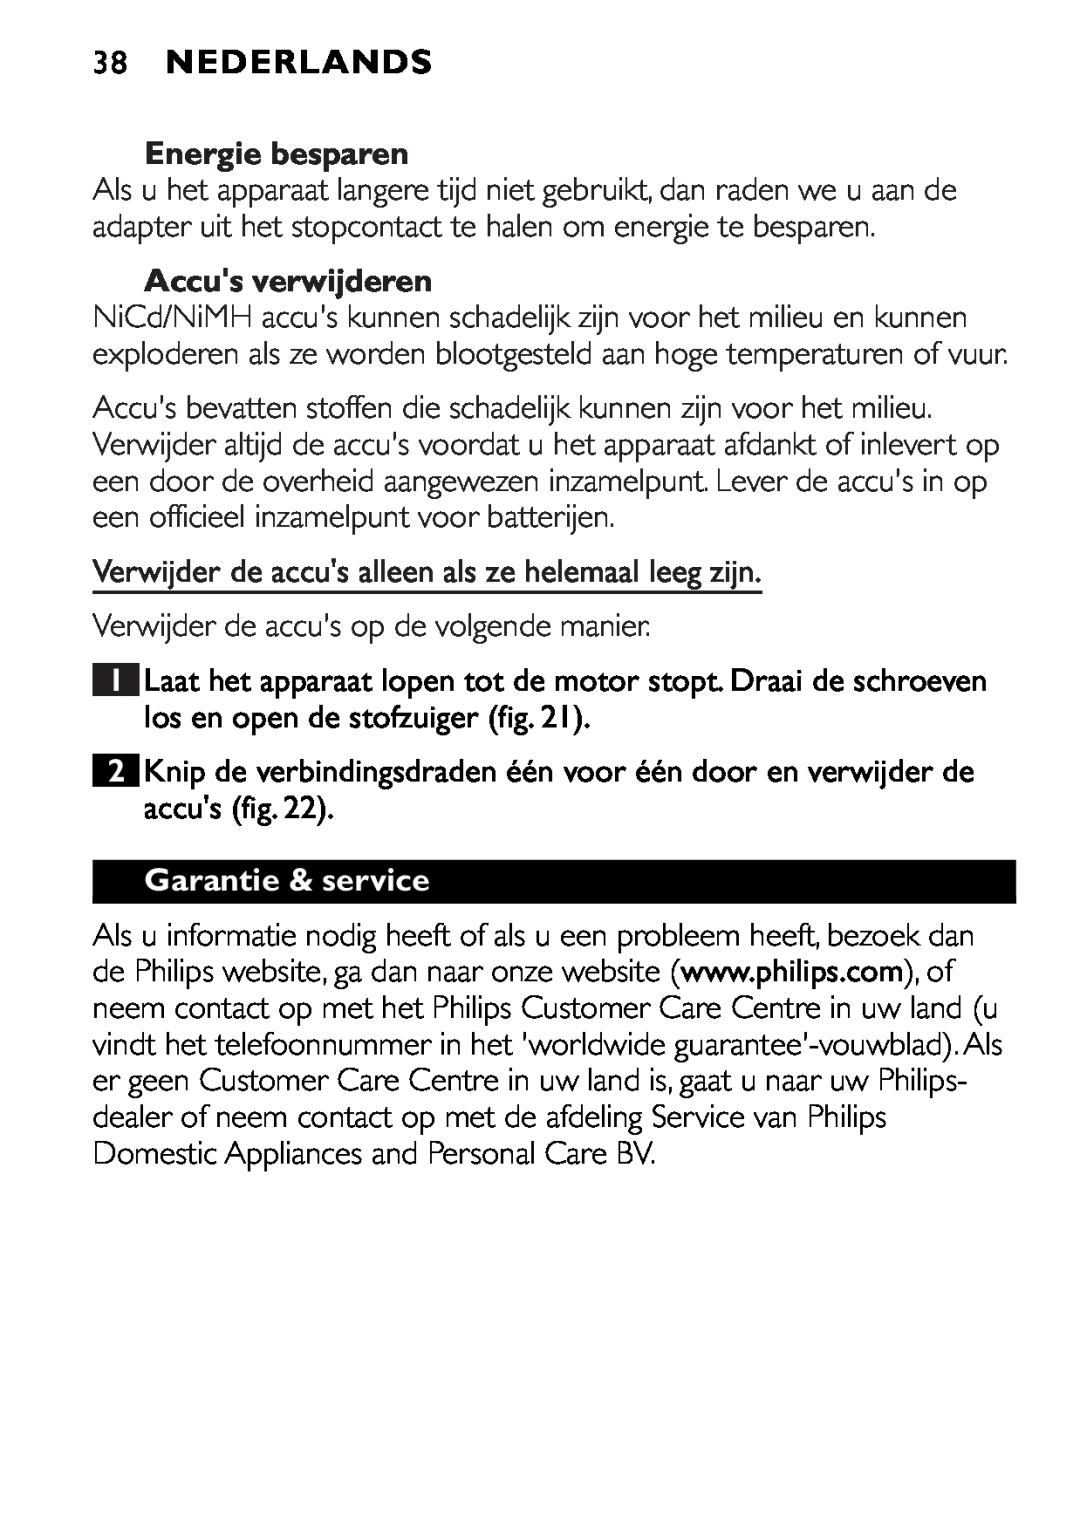 Philips FC6055 manual 38NEDERLANDS, Energie besparen, Accus verwijderen, Garantie & service 